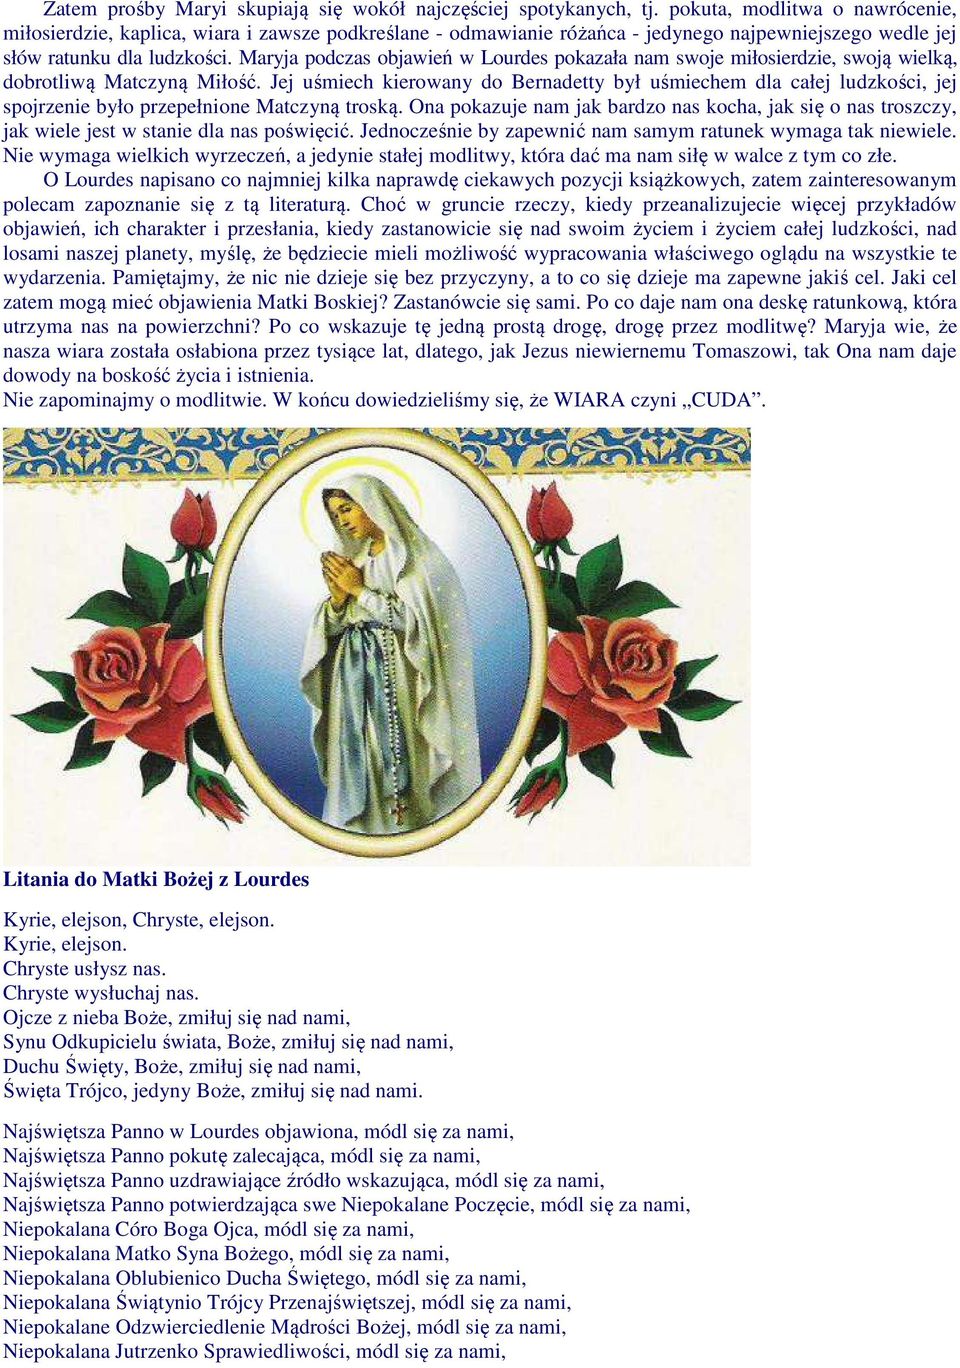 Maryja podczas objawień w Lourdes pokazała nam swoje miłosierdzie, swoją wielką, dobrotliwą Matczyną Miłość.